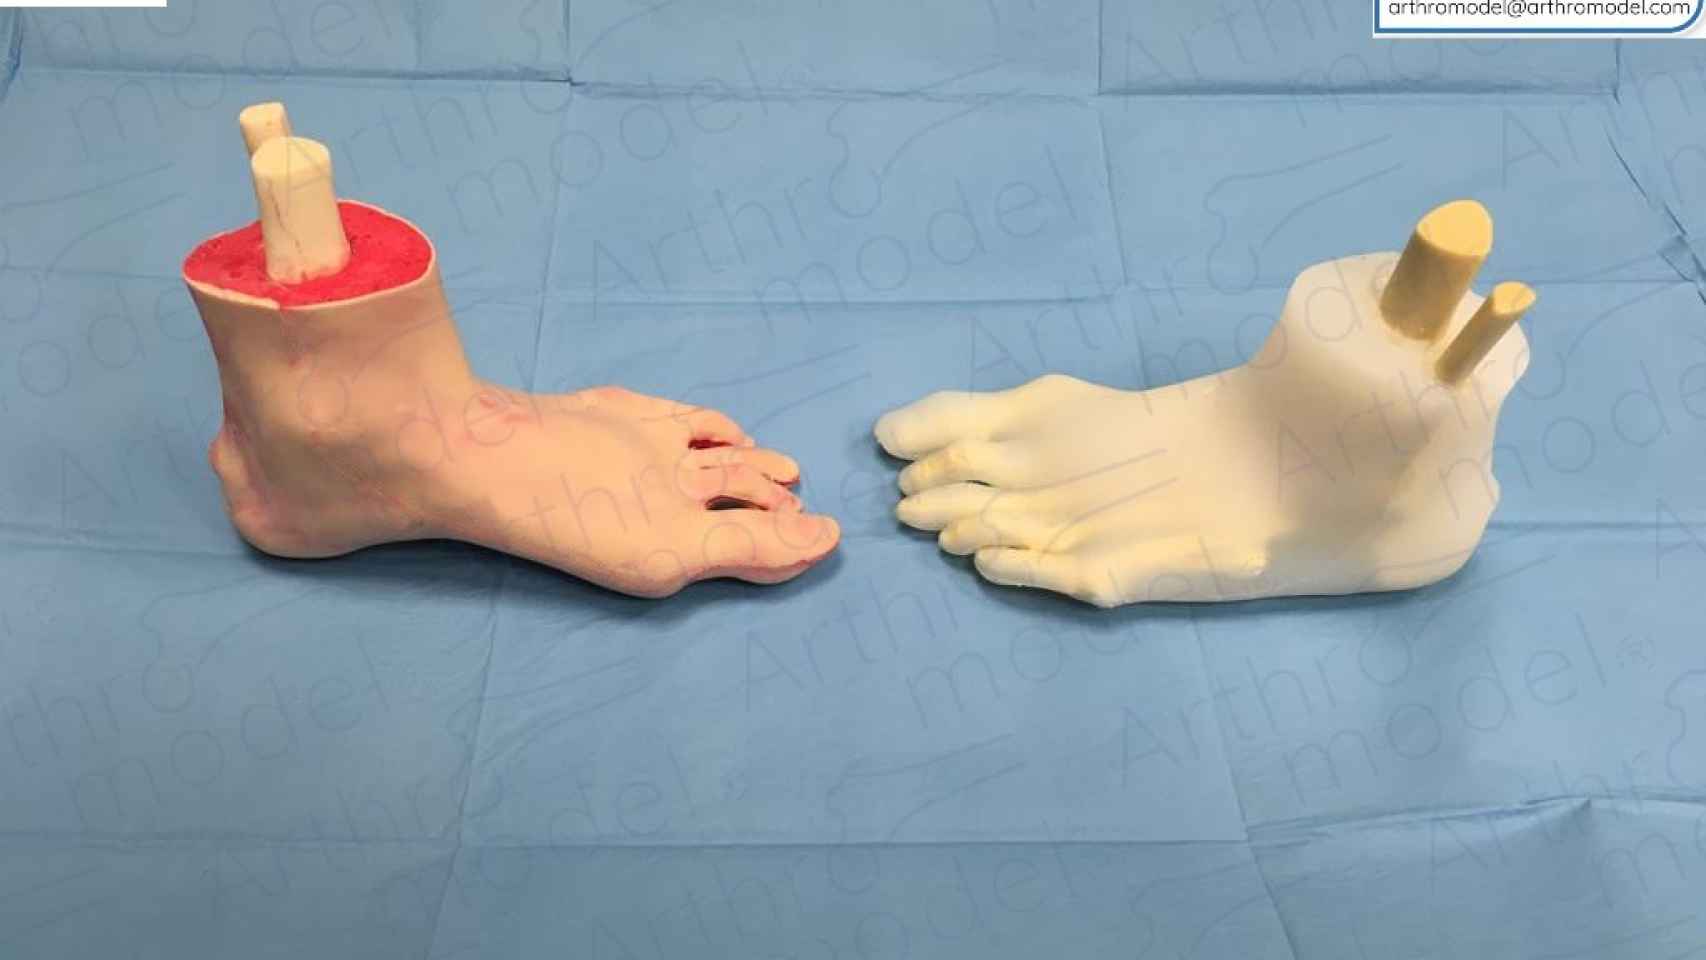 Los biomodelos de pies que incluyen un tobillo fracturado son uno de los pedidos más recurrentes que recibe esta compañía, por parte de traumatólogos.